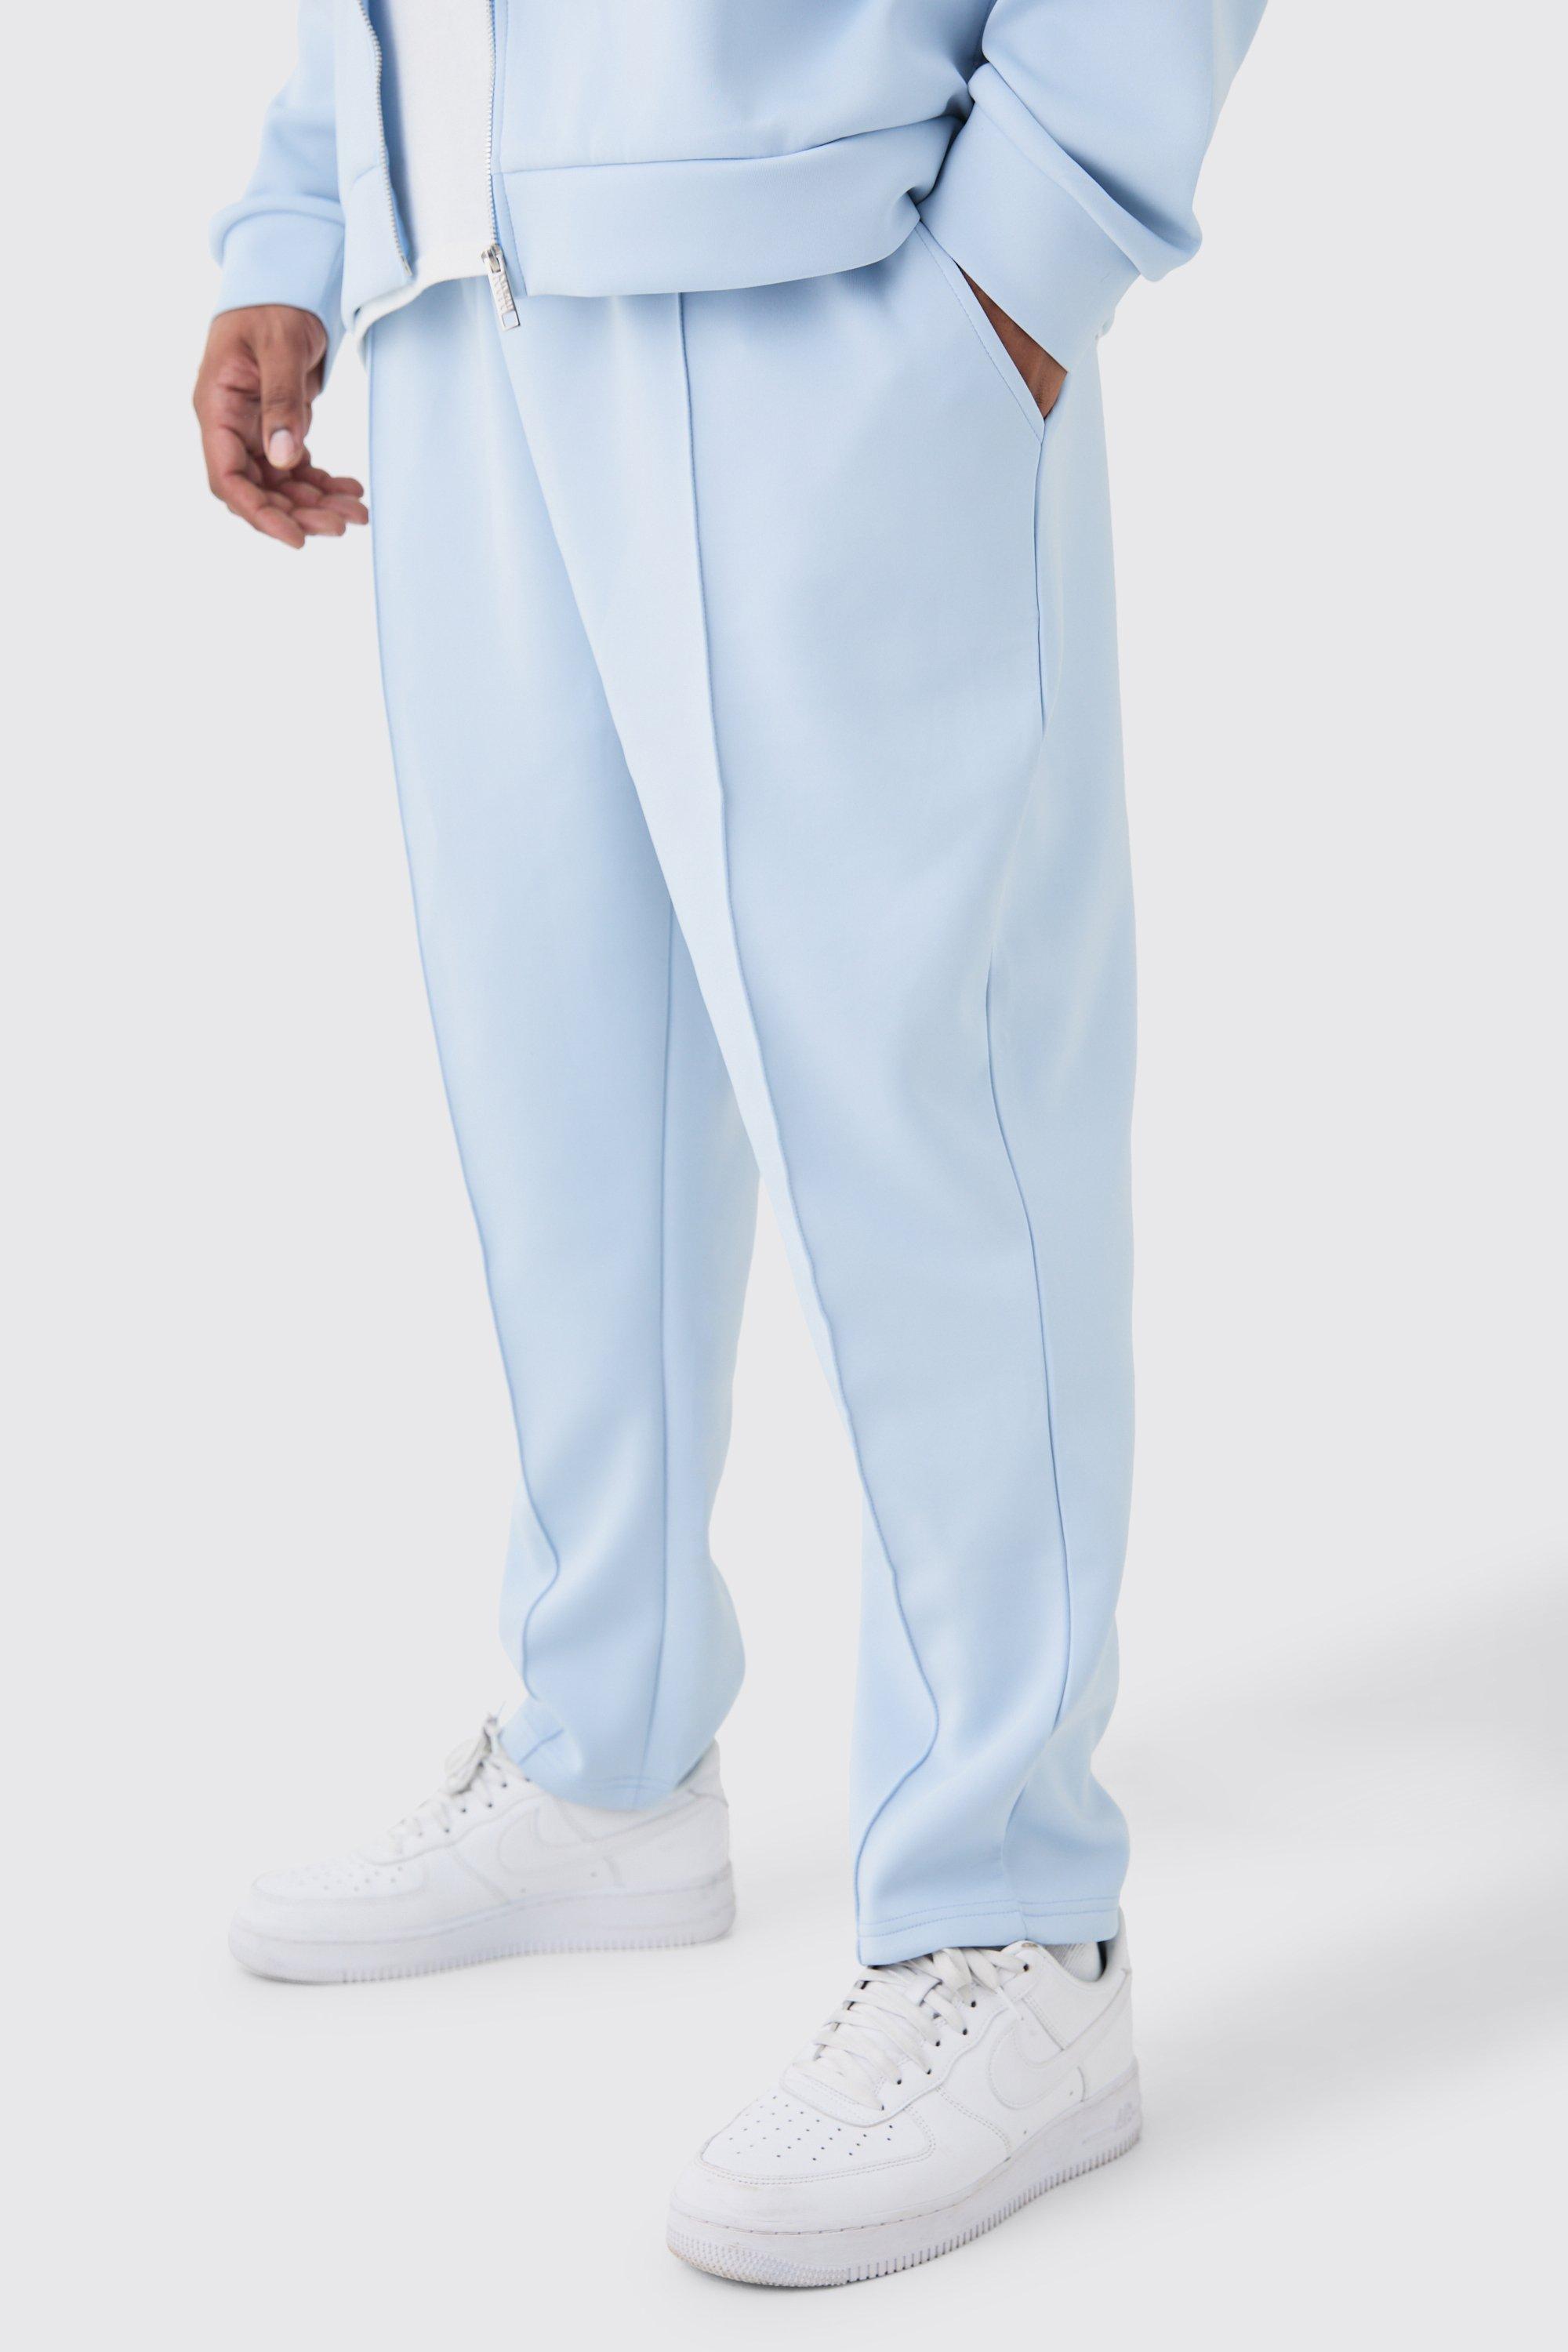 Image of Pantaloni tuta Plus Size affusolati alla caviglia in Scuba, Azzurro